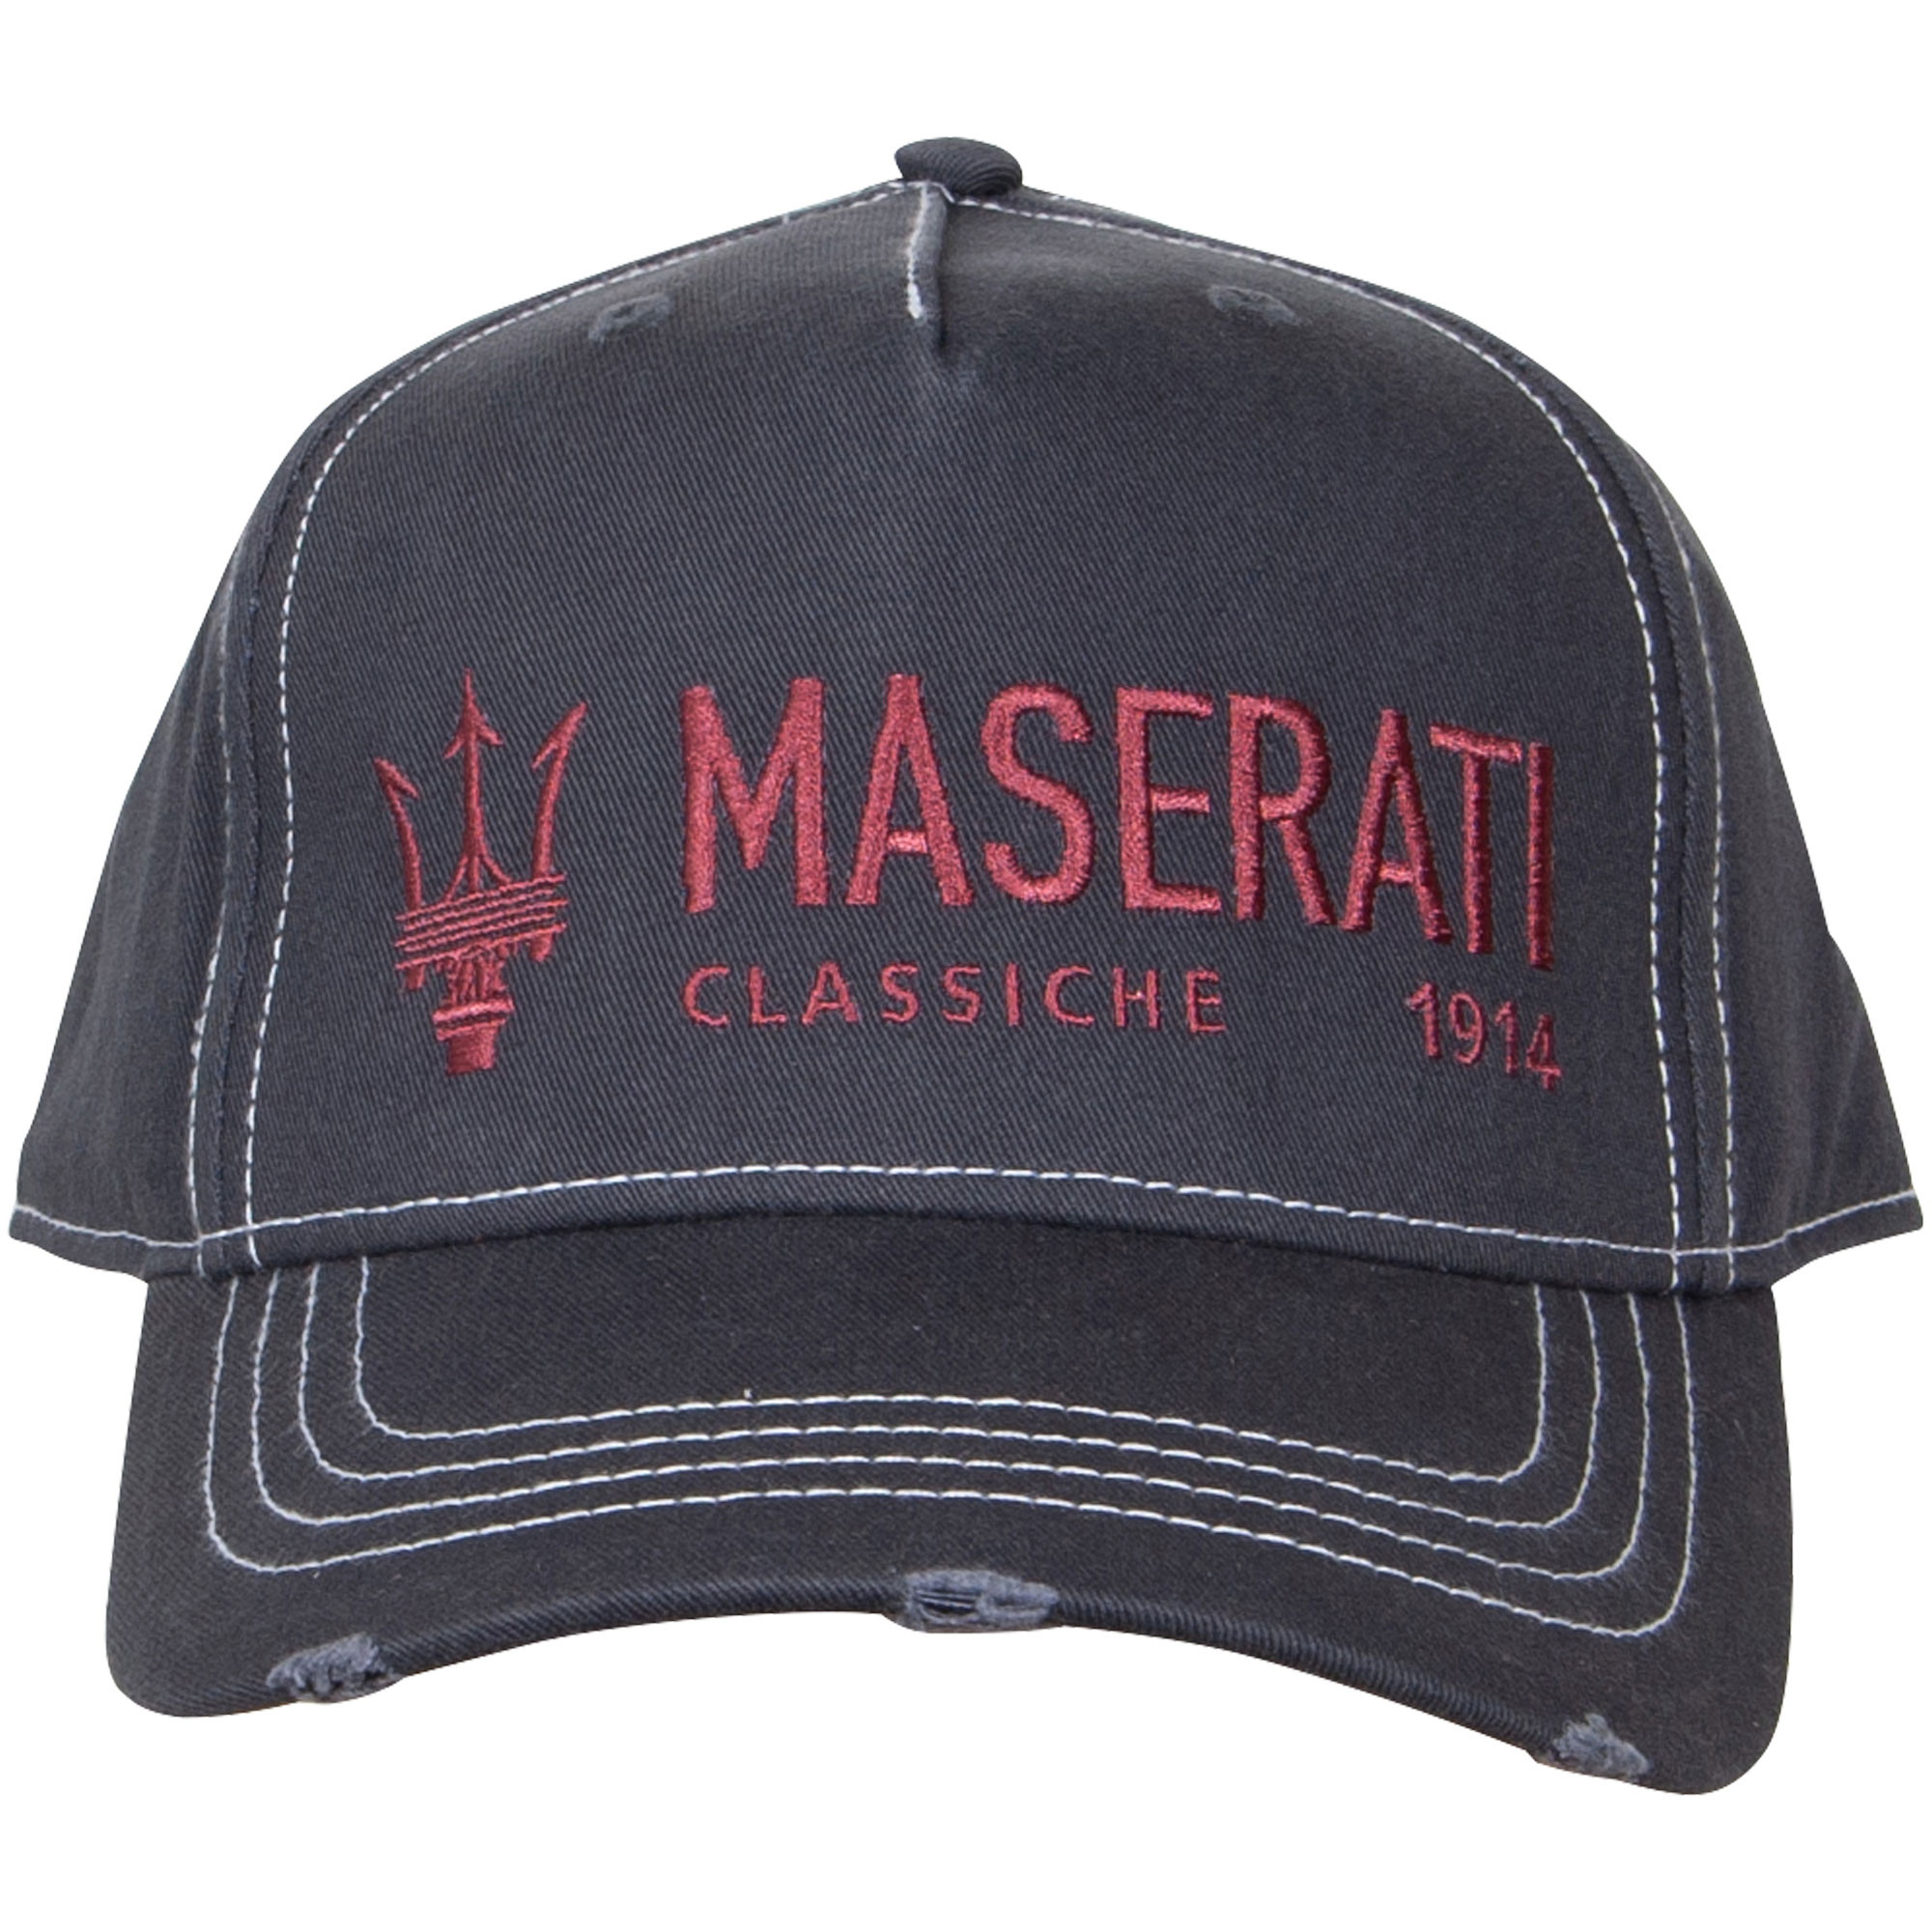 Maserati Classiche cap "Lifestyle" - grey